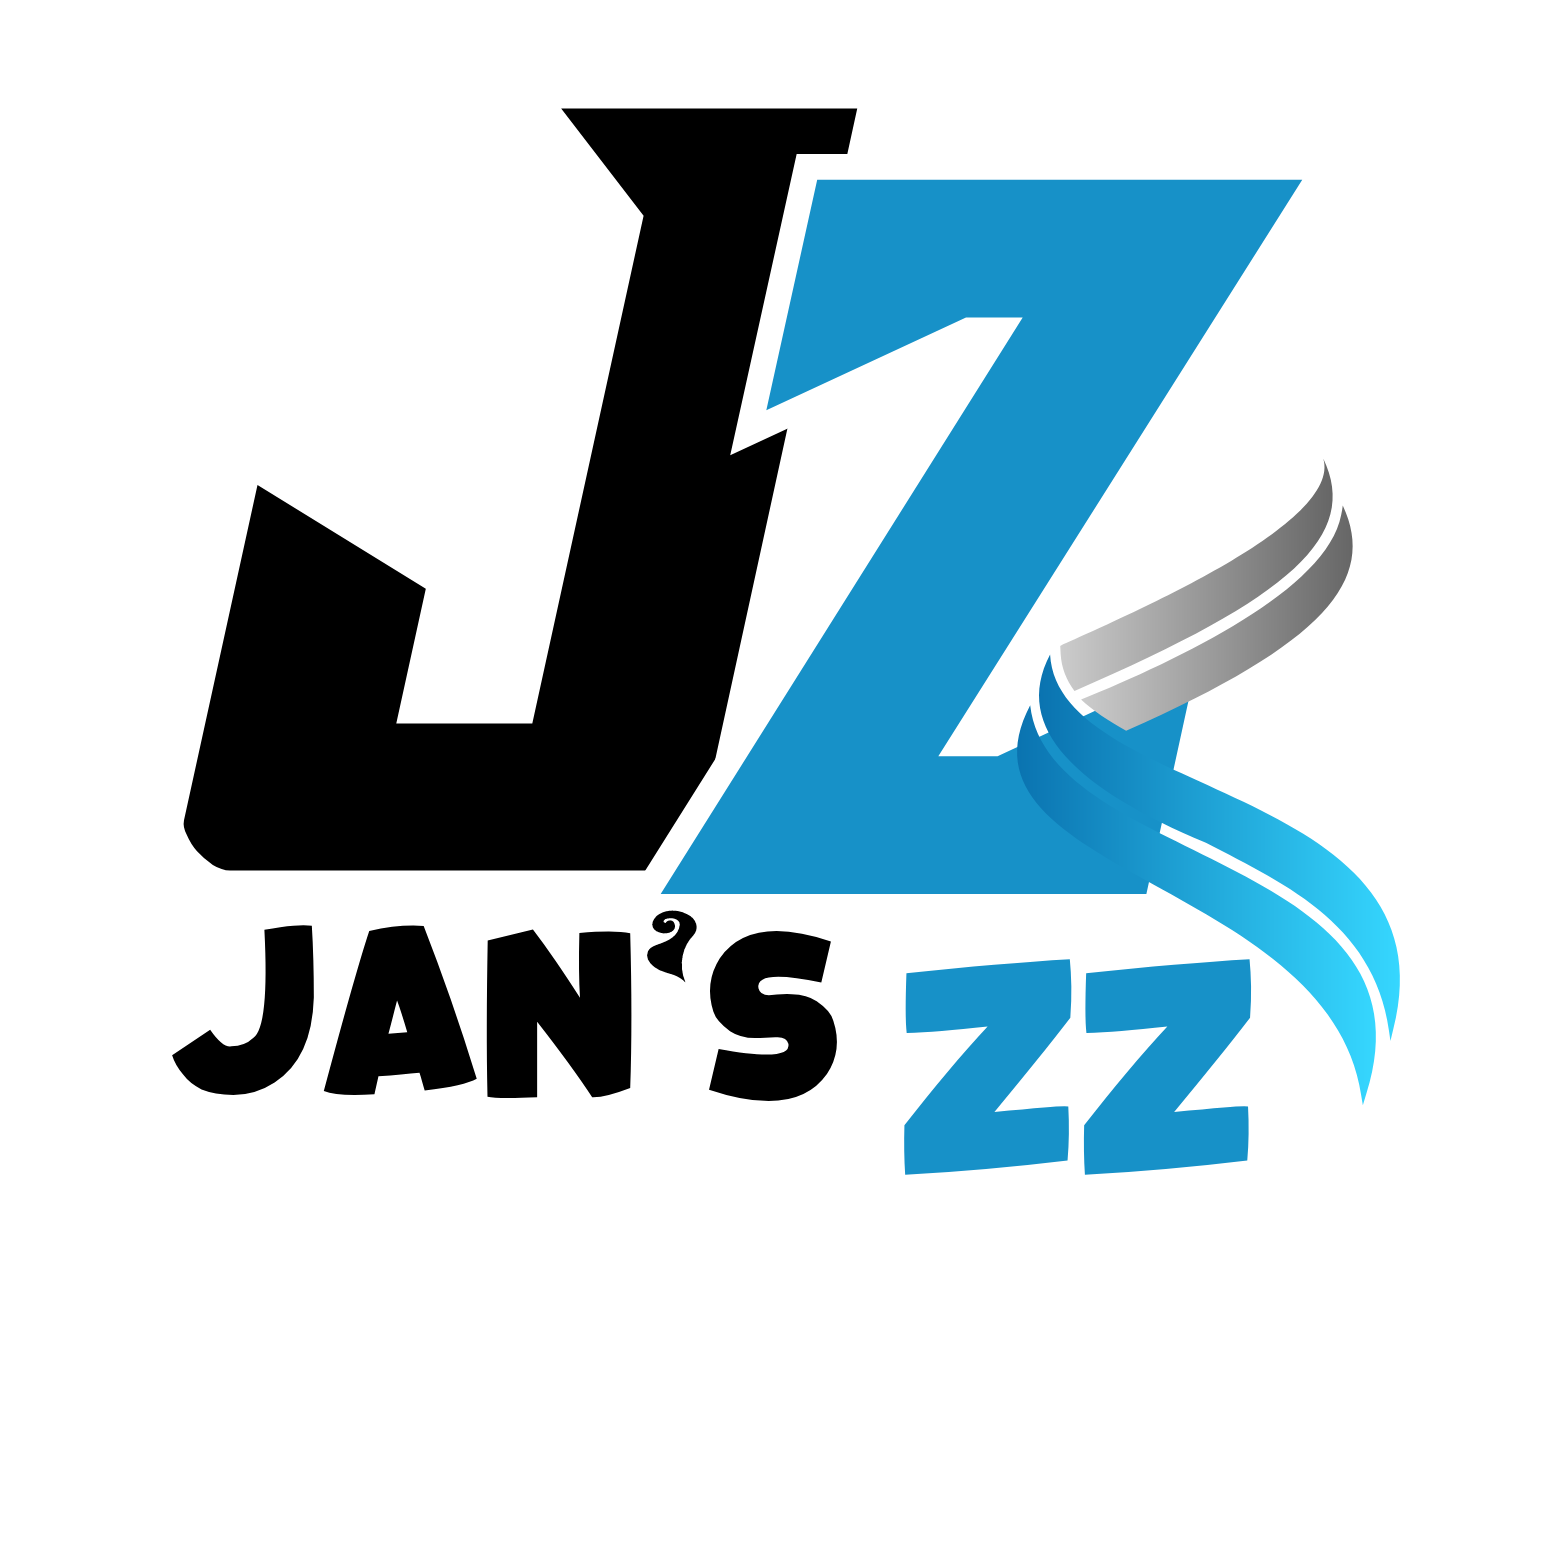 Jan's ZZ